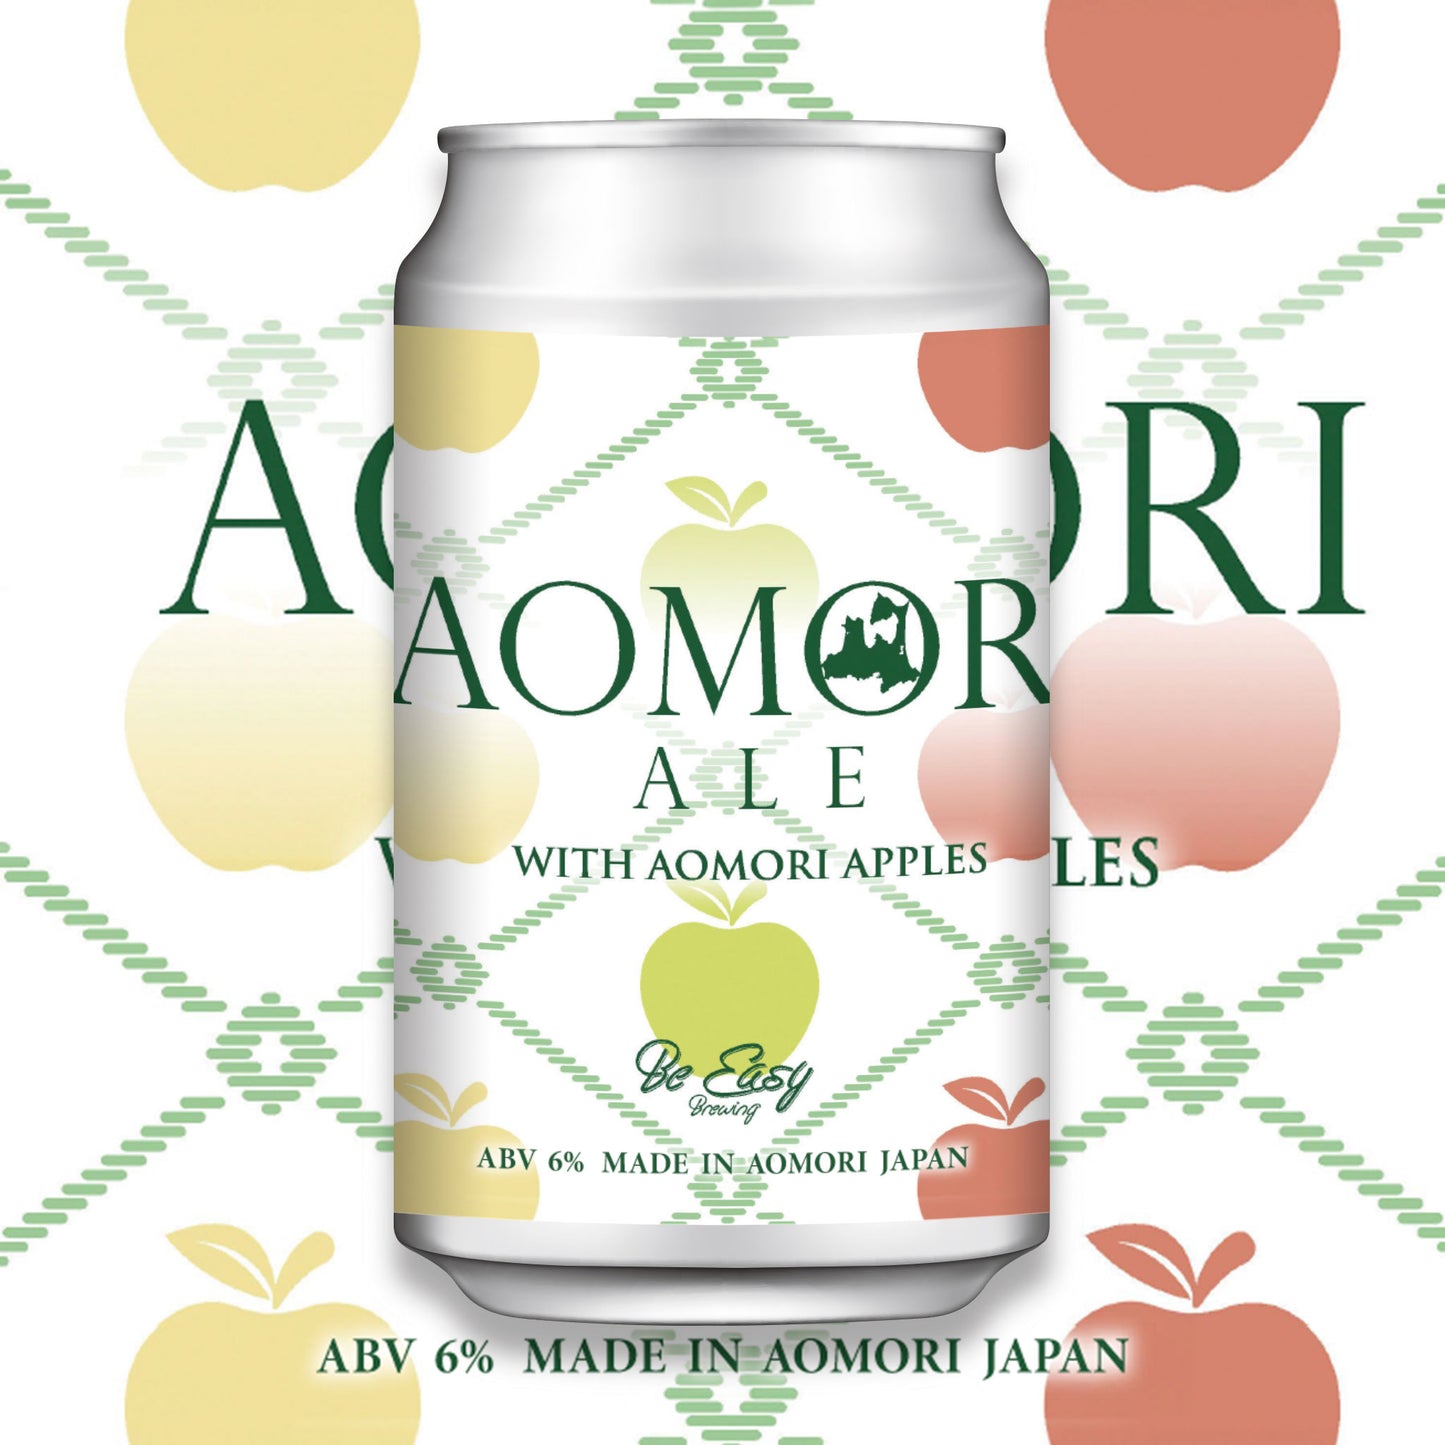 Idawashii Aomori Ale with Aomori Apples